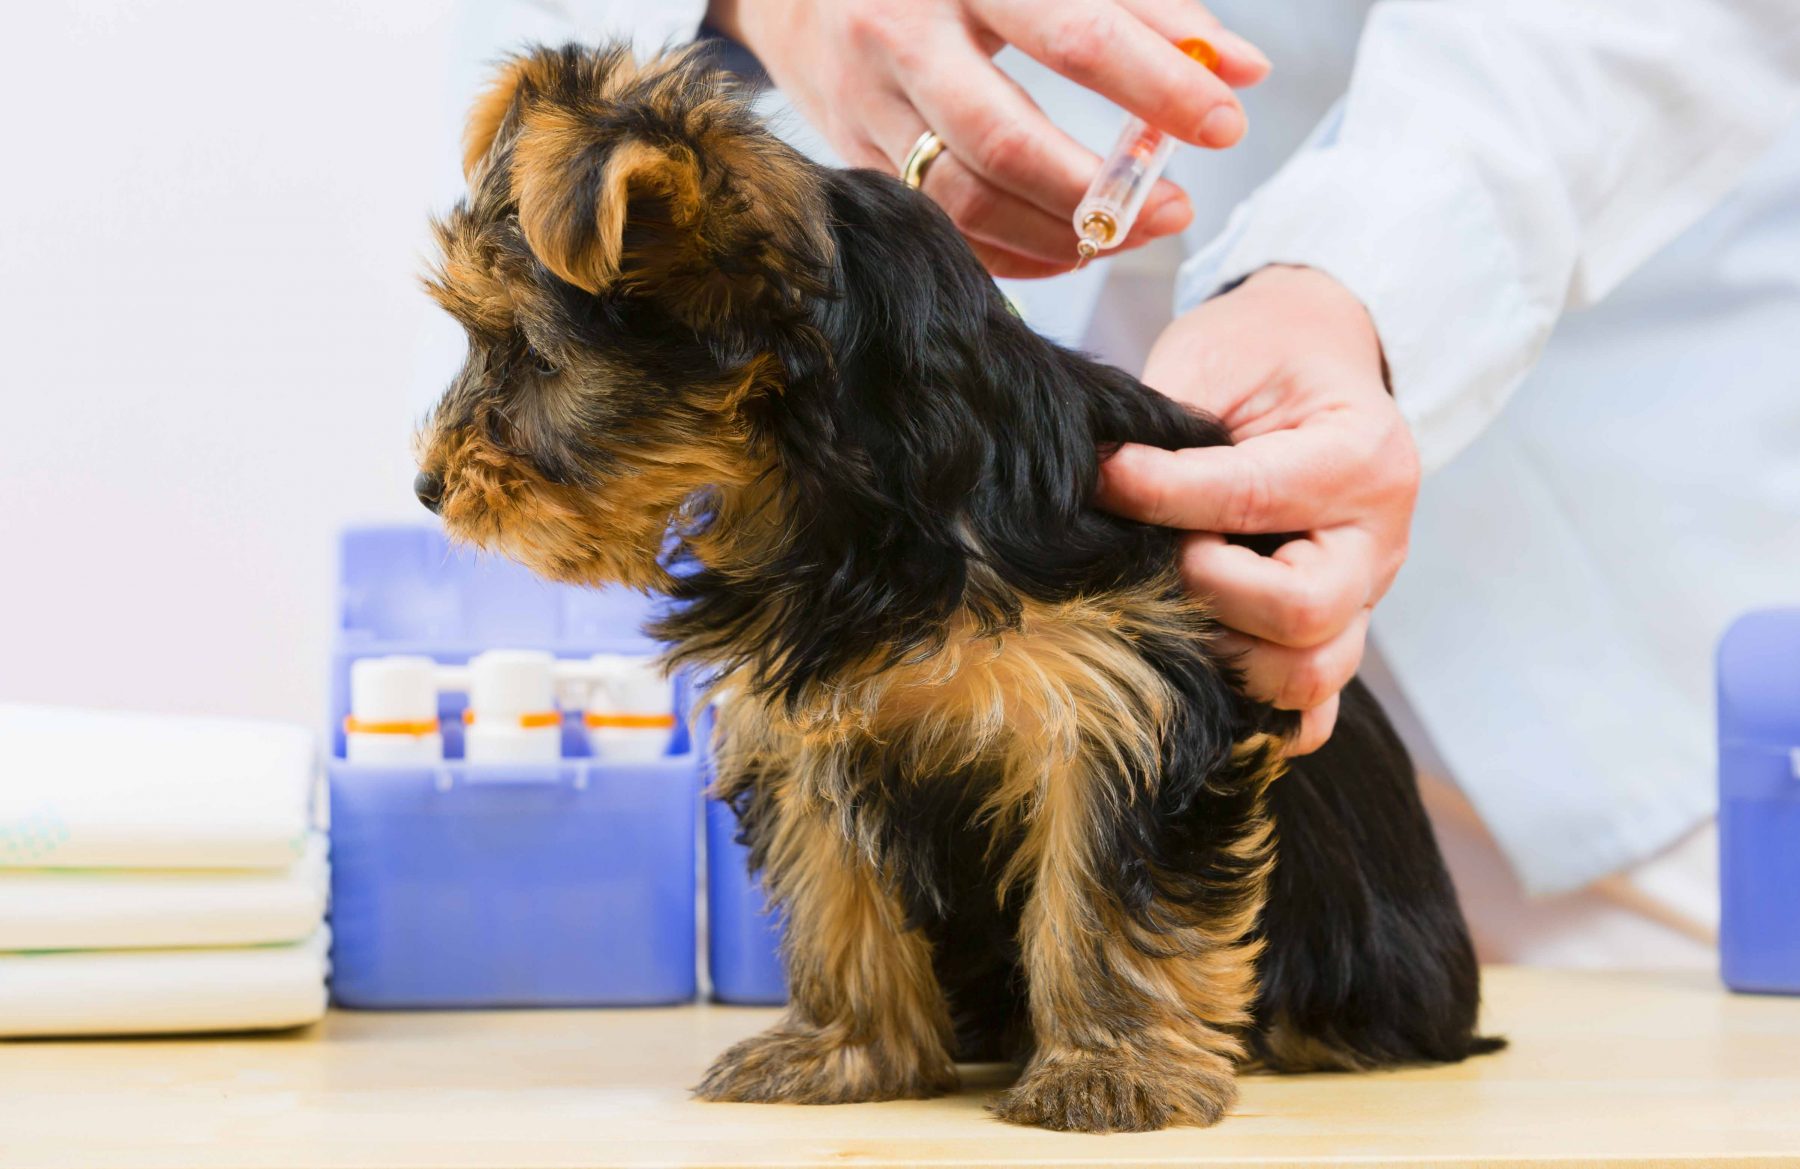 puppy immunization